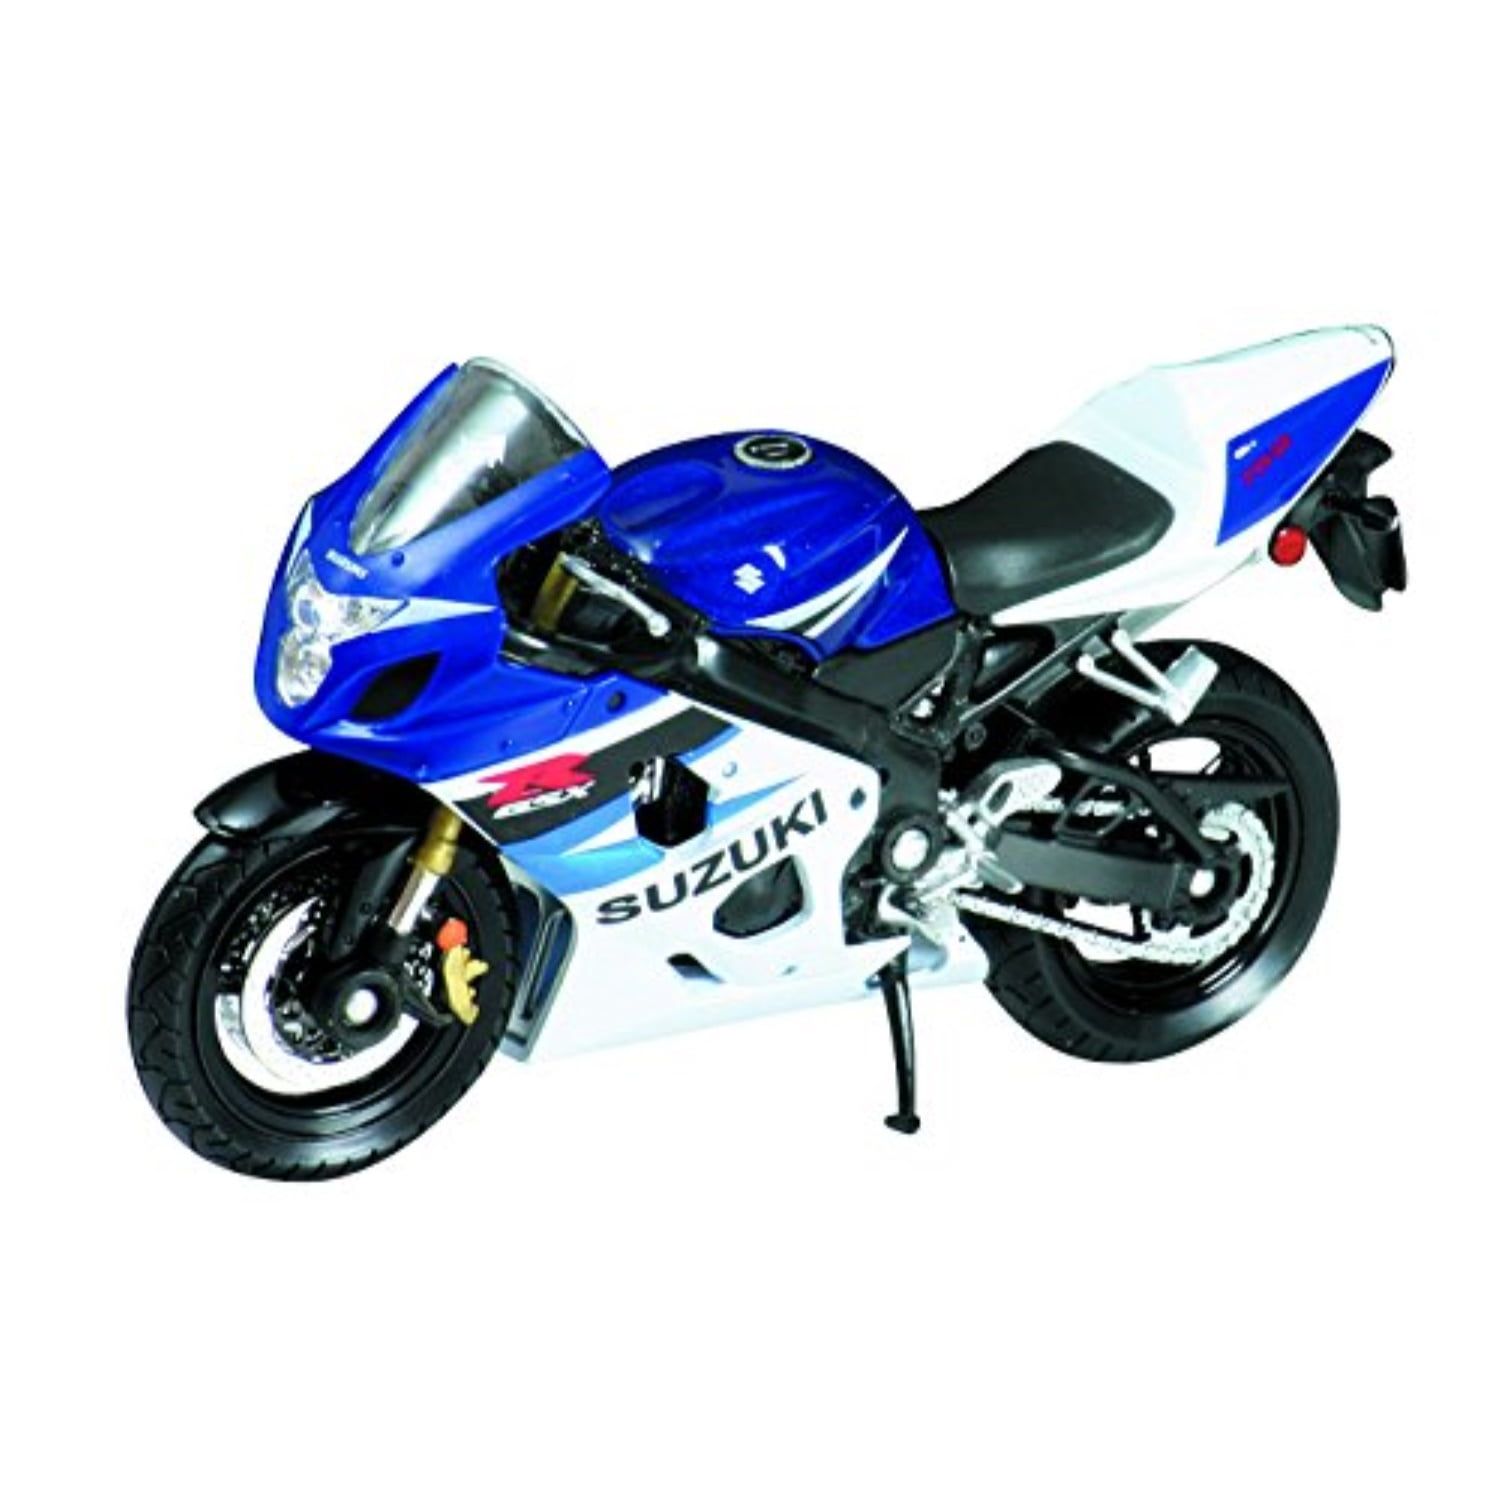 Maisto 118 2012 XL 1200V Seventy two blue motorcycle diecast motorbike